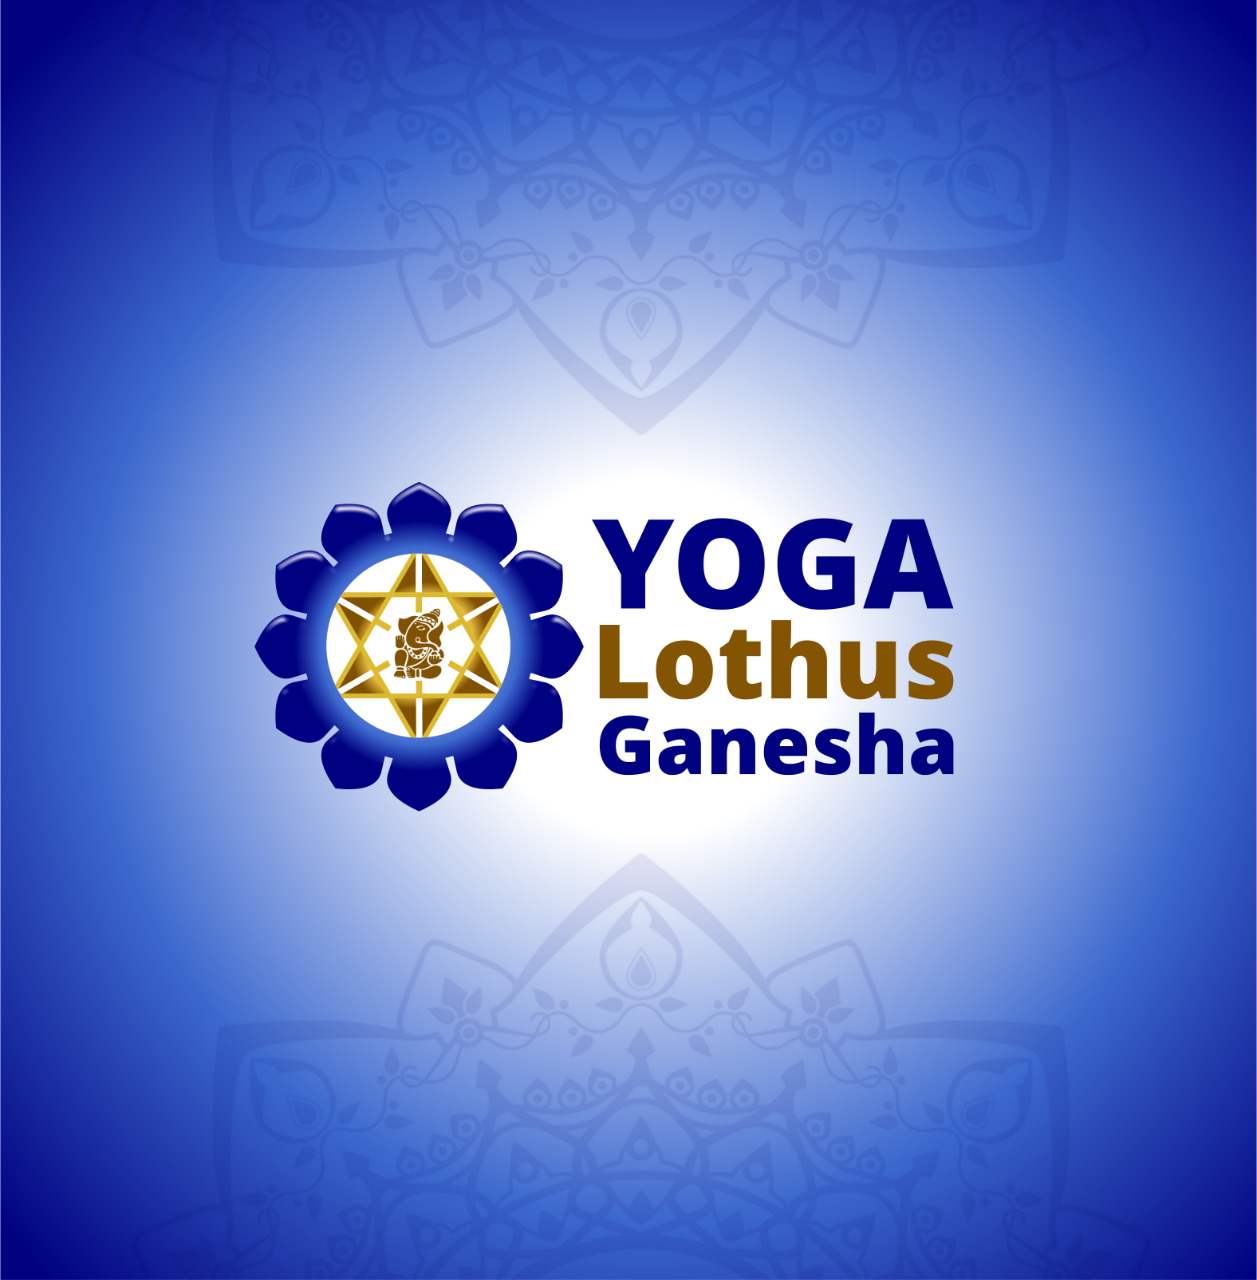 Yoga na Nova Era  -  Yoga Lothus Ganesha